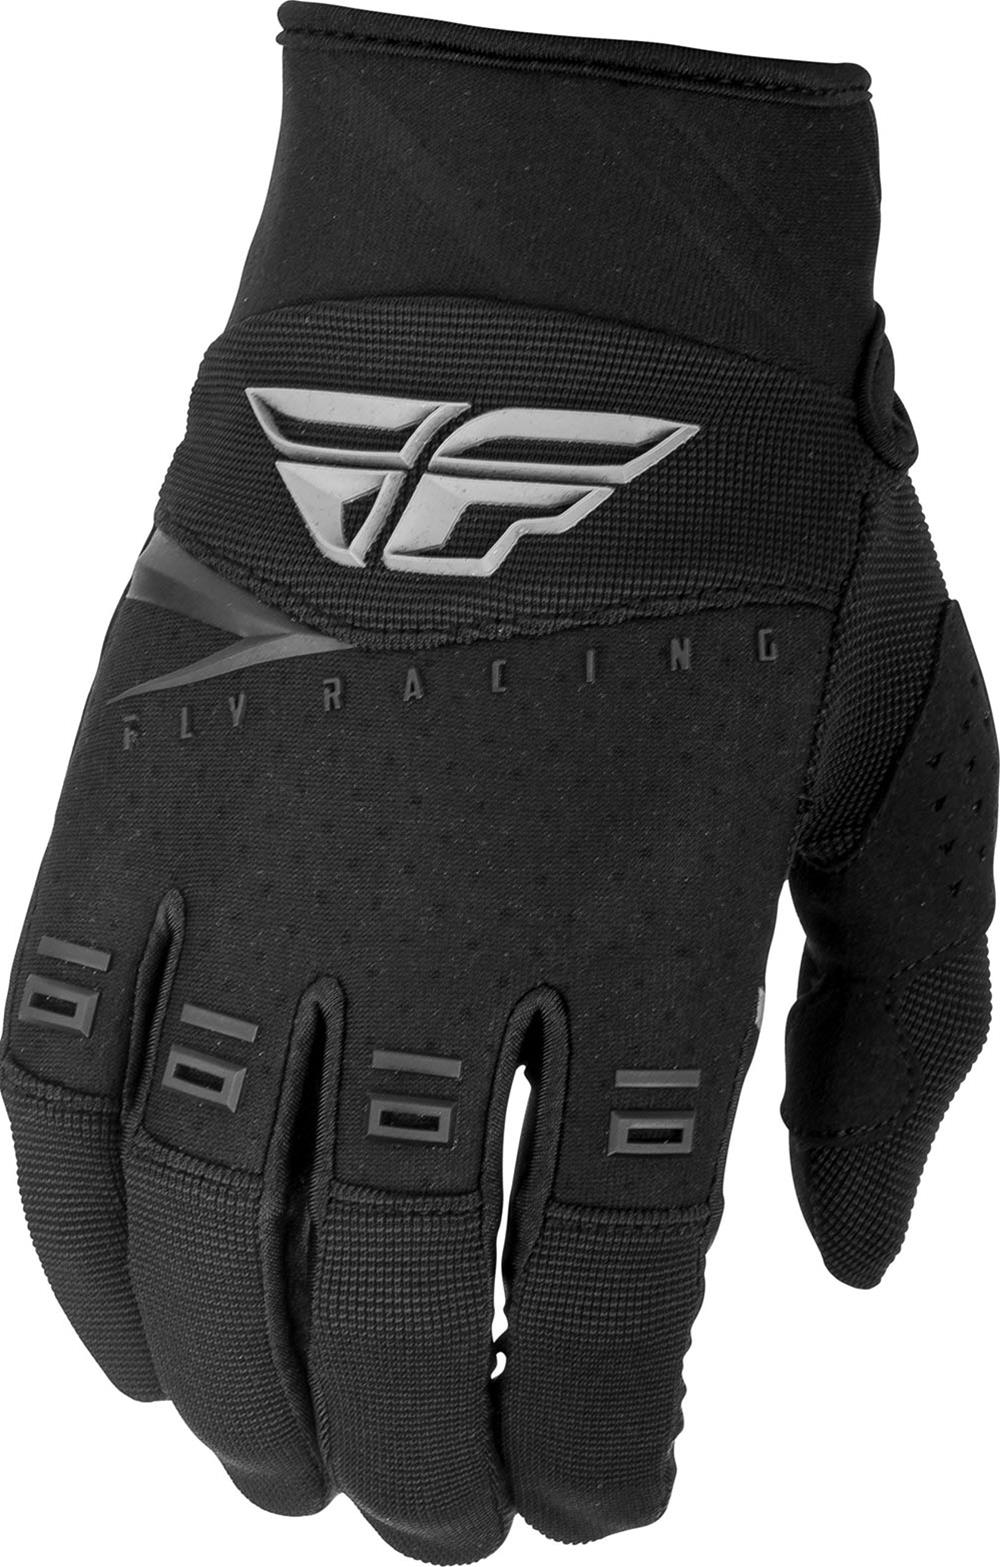 Fly F-16 BMX Gloves (2019) - Size 13 / Men's XXX-Large (XXXL) - Black/Gray